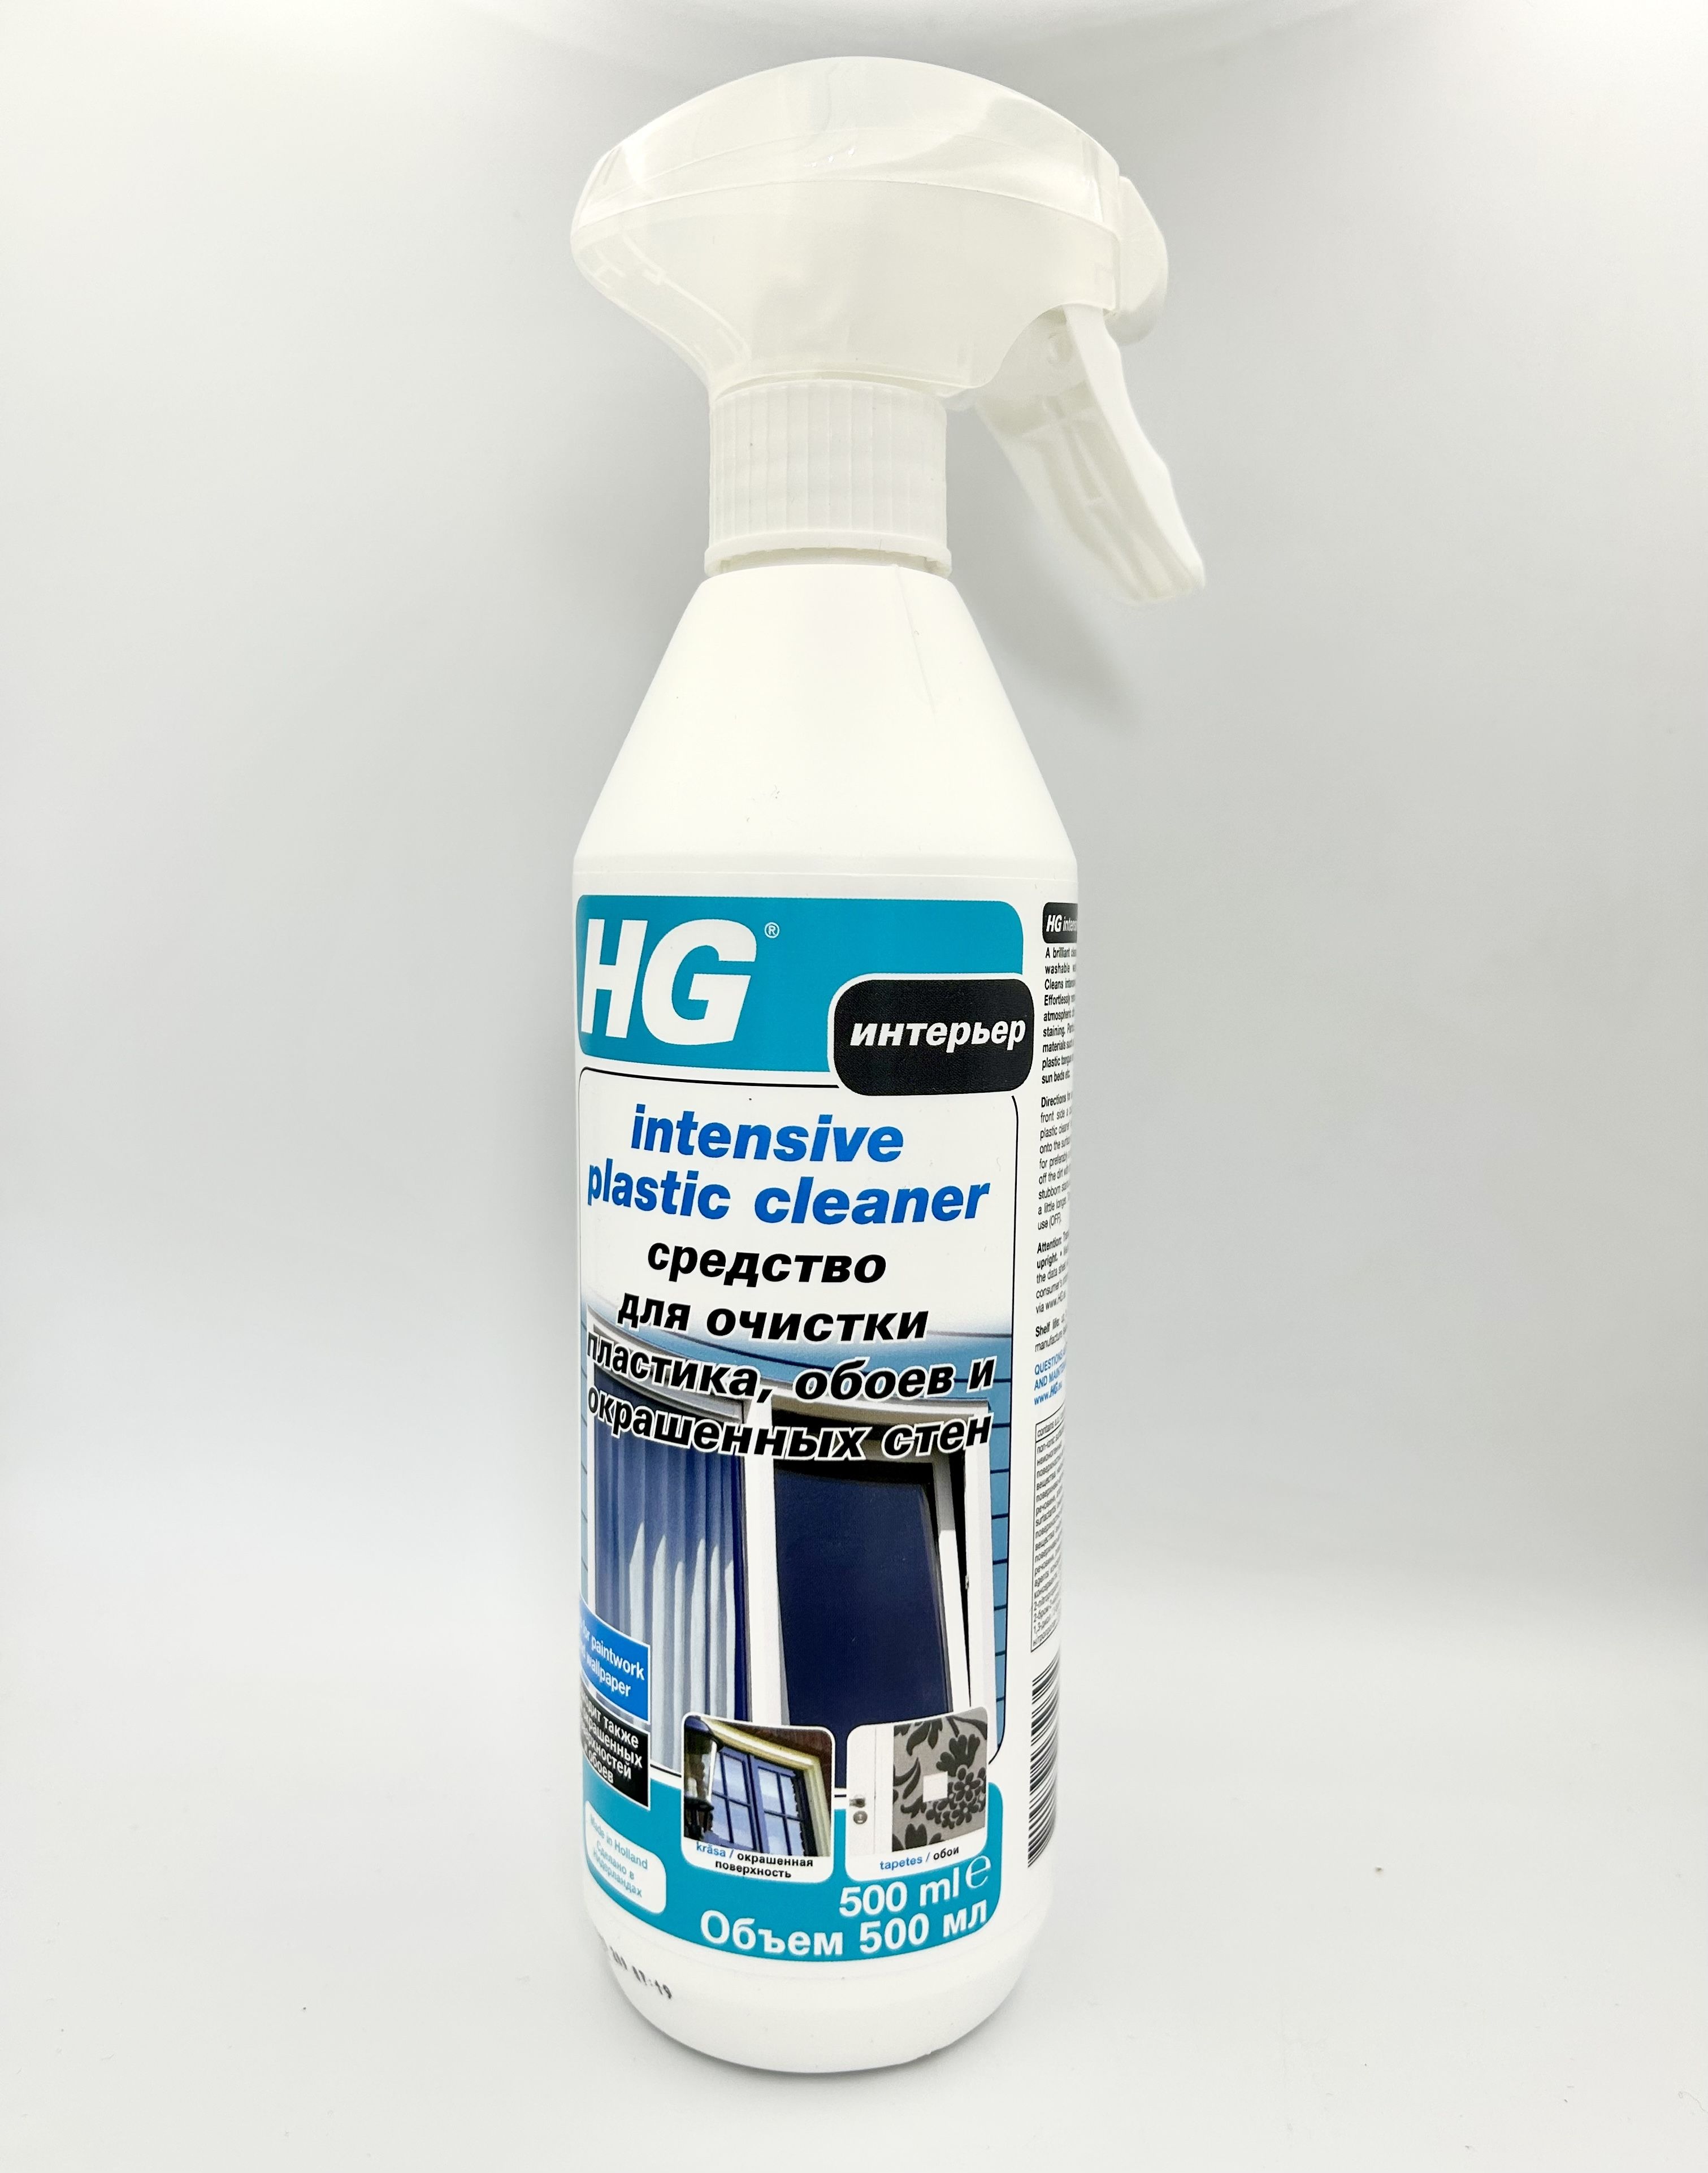 HG Средство для очистки пластика, обоев и окрашенных стен 500 мл с распылителем